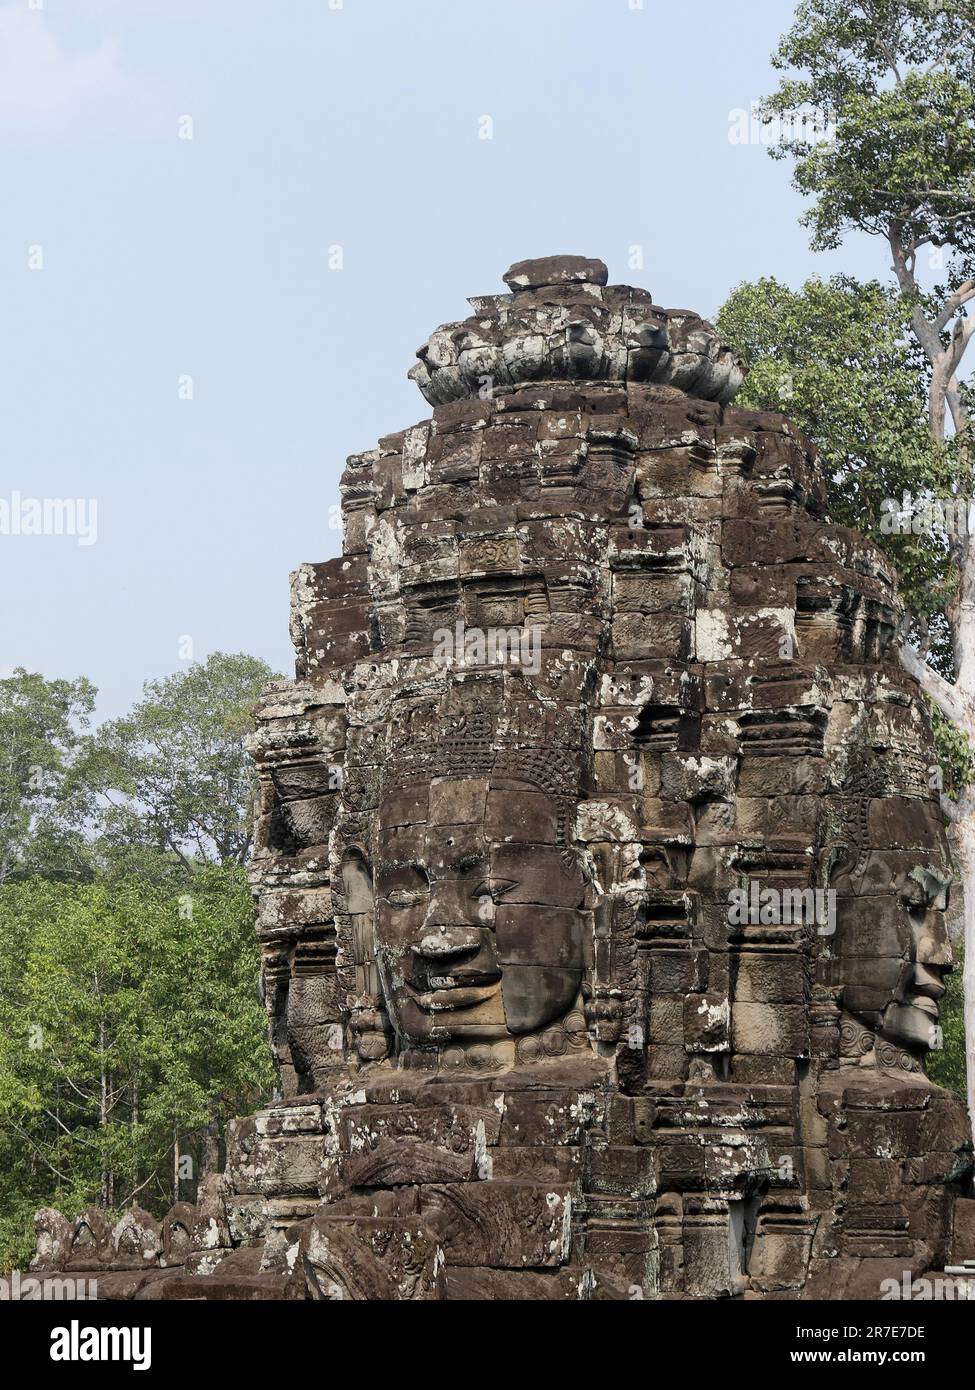 BayonTemple, Siem Reap Province, Angkor's Temple Complex 1192 von der UNESCO zum Weltkulturerbe erklärt, erbaut von König Jayavarman VII. Zwischen XII. A Stockfoto